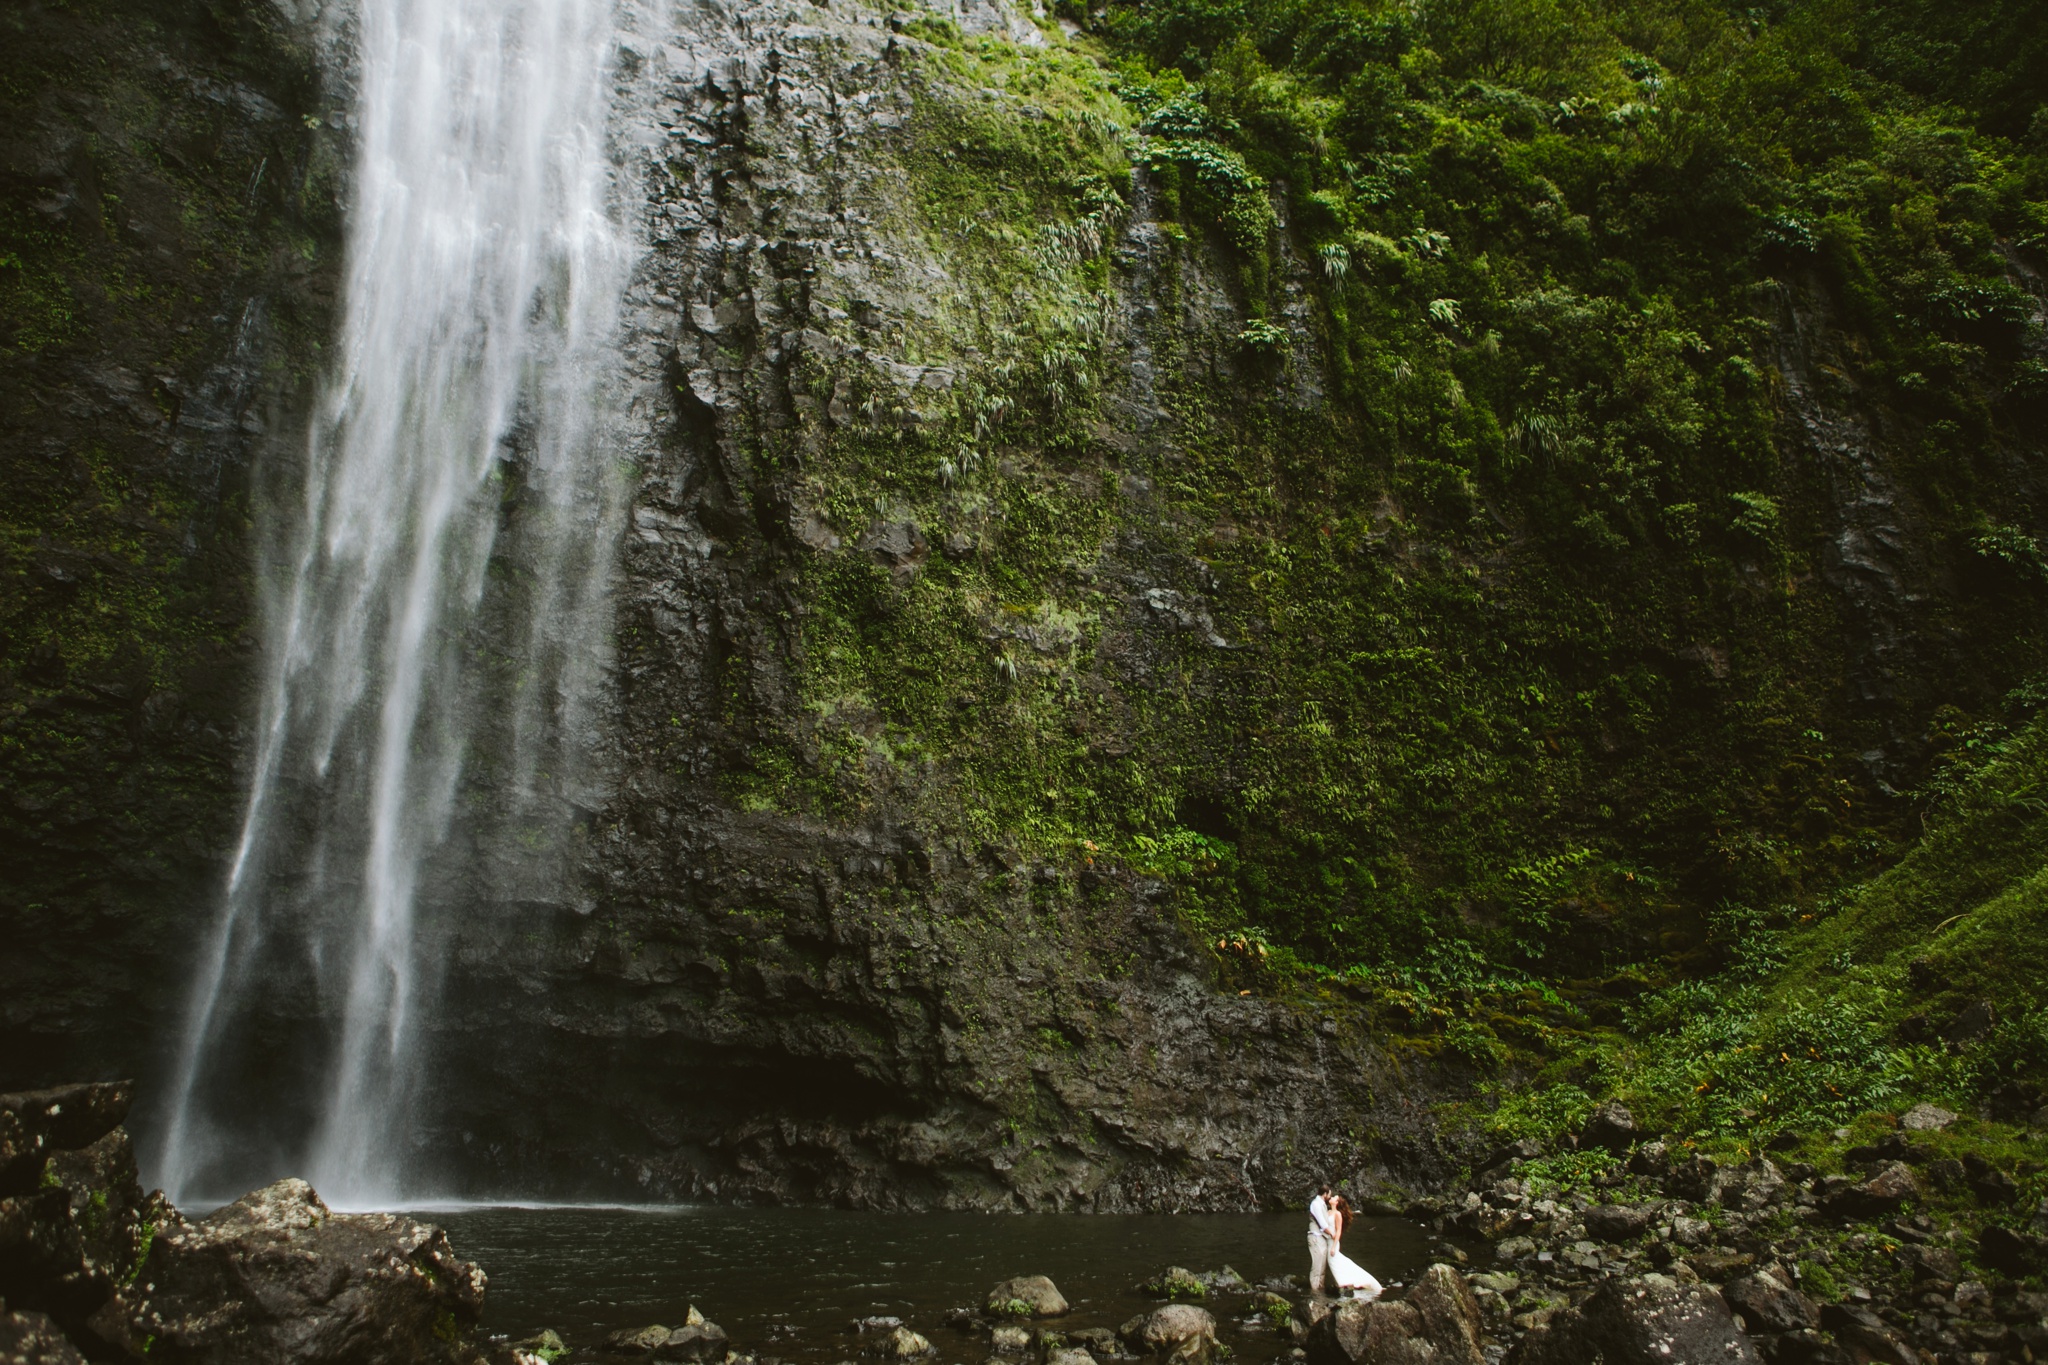 Kauai HI Hanakapiai Falls Elopement Couple Kissing